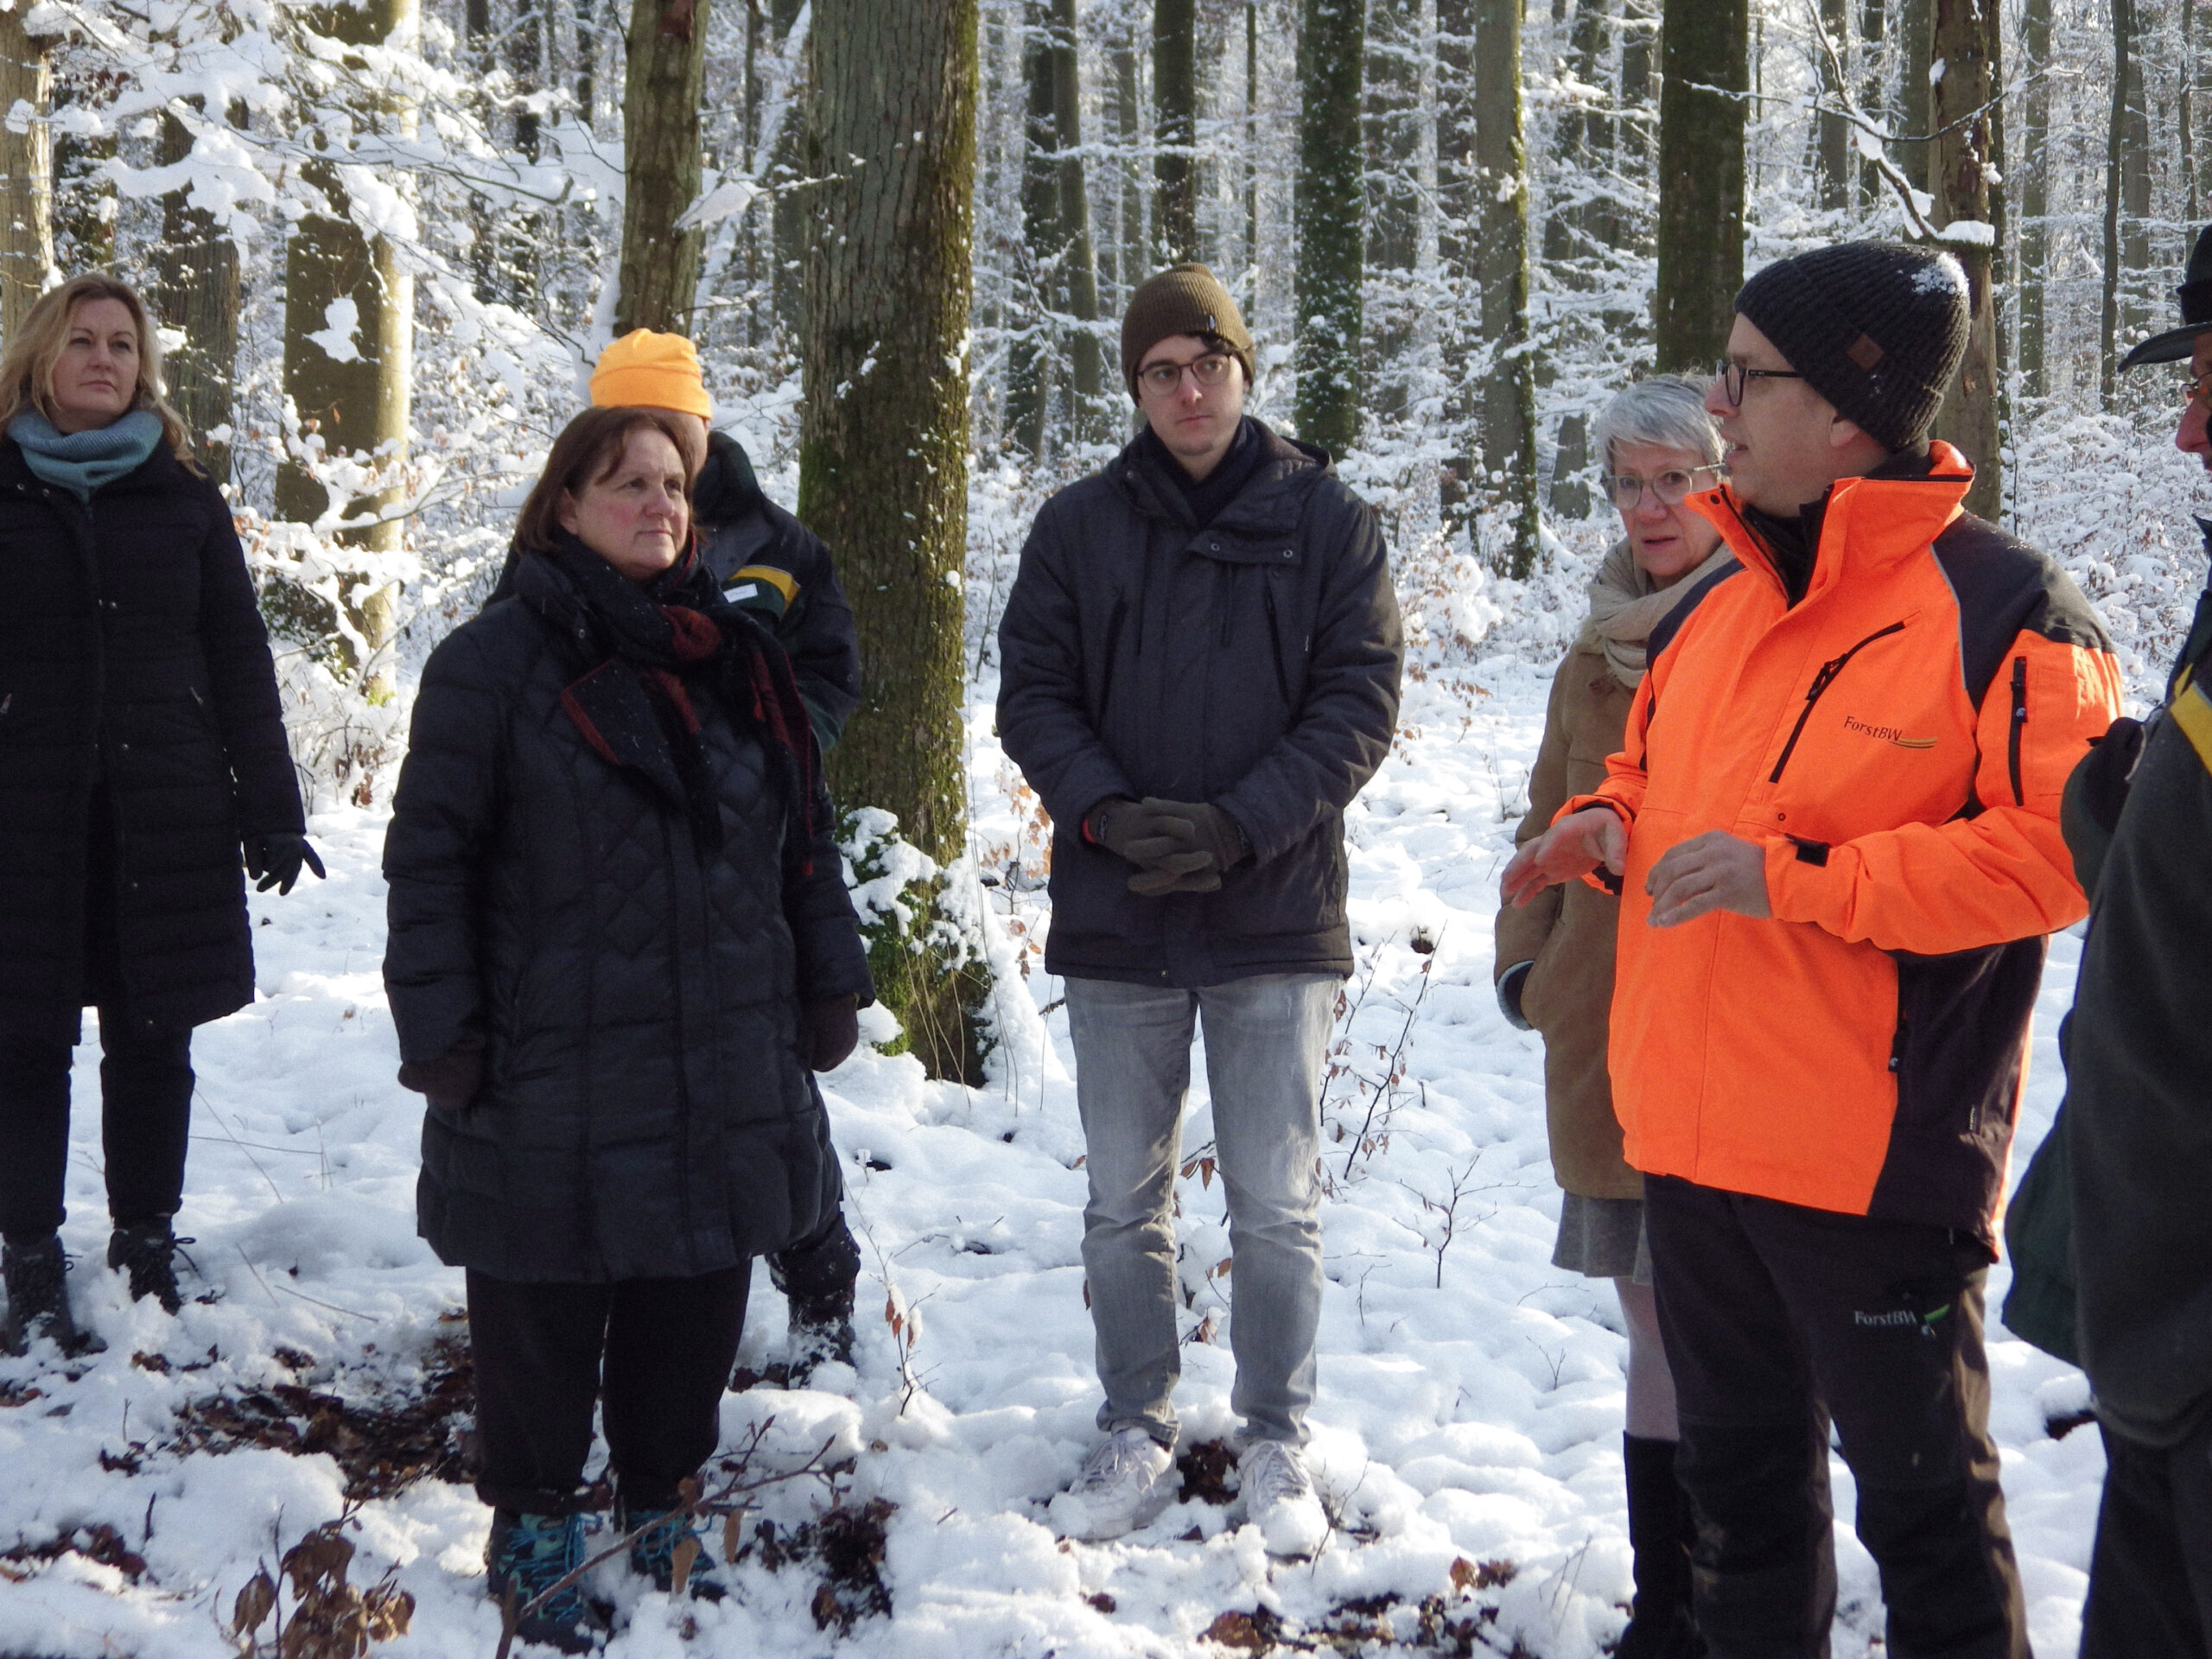 Theresa Schopper, Mario Dietel und Catherine Kern hören einem Förster zu. Sie stehen in einem verschneiten Wald.